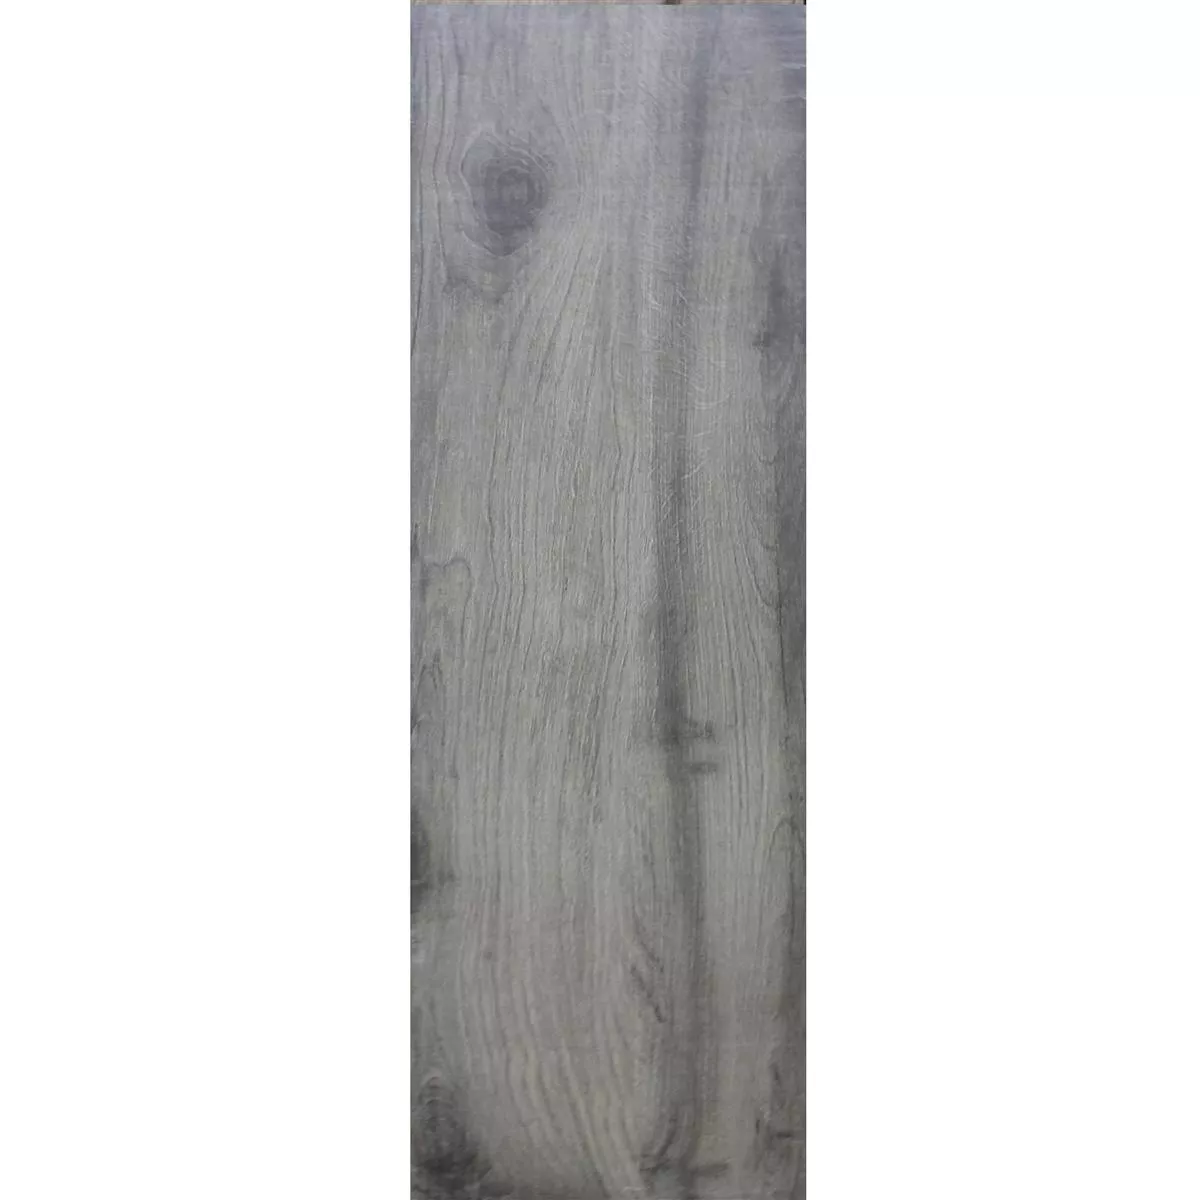 Próbka Płytki Podłogowe Elmwood Wygląd Drewna 20x120cm Antracyt Szary